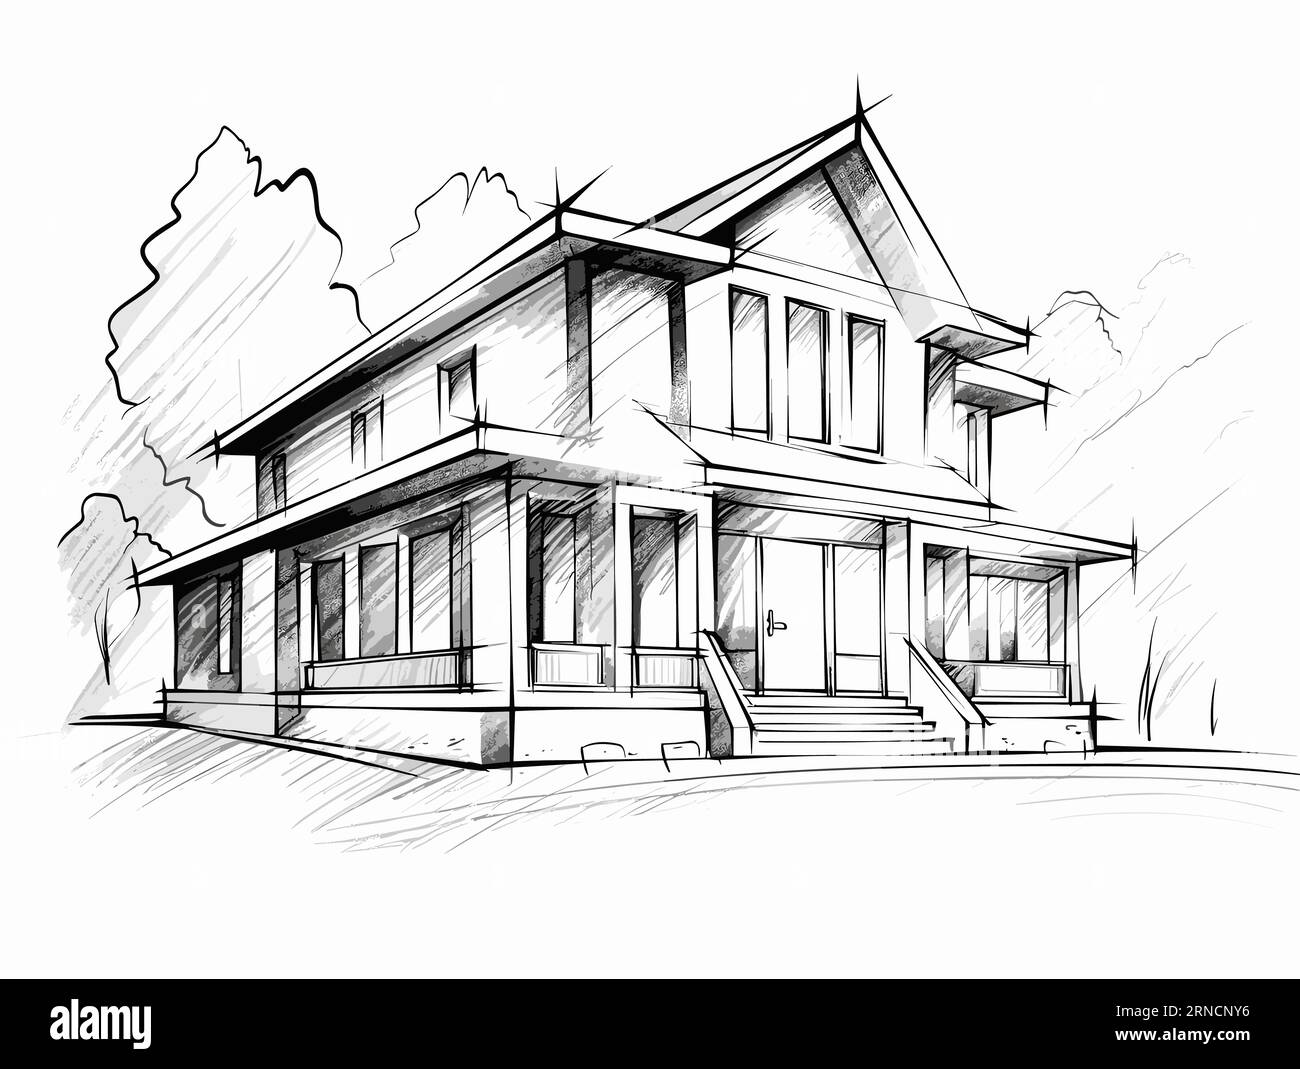 Illustration de dessin de bâtiment blanc en noir et blanc, dans le style de l'accent sur la conception de caractères, Clear Edge Definition, Mingei, Timeless Artistry Illustration de Vecteur